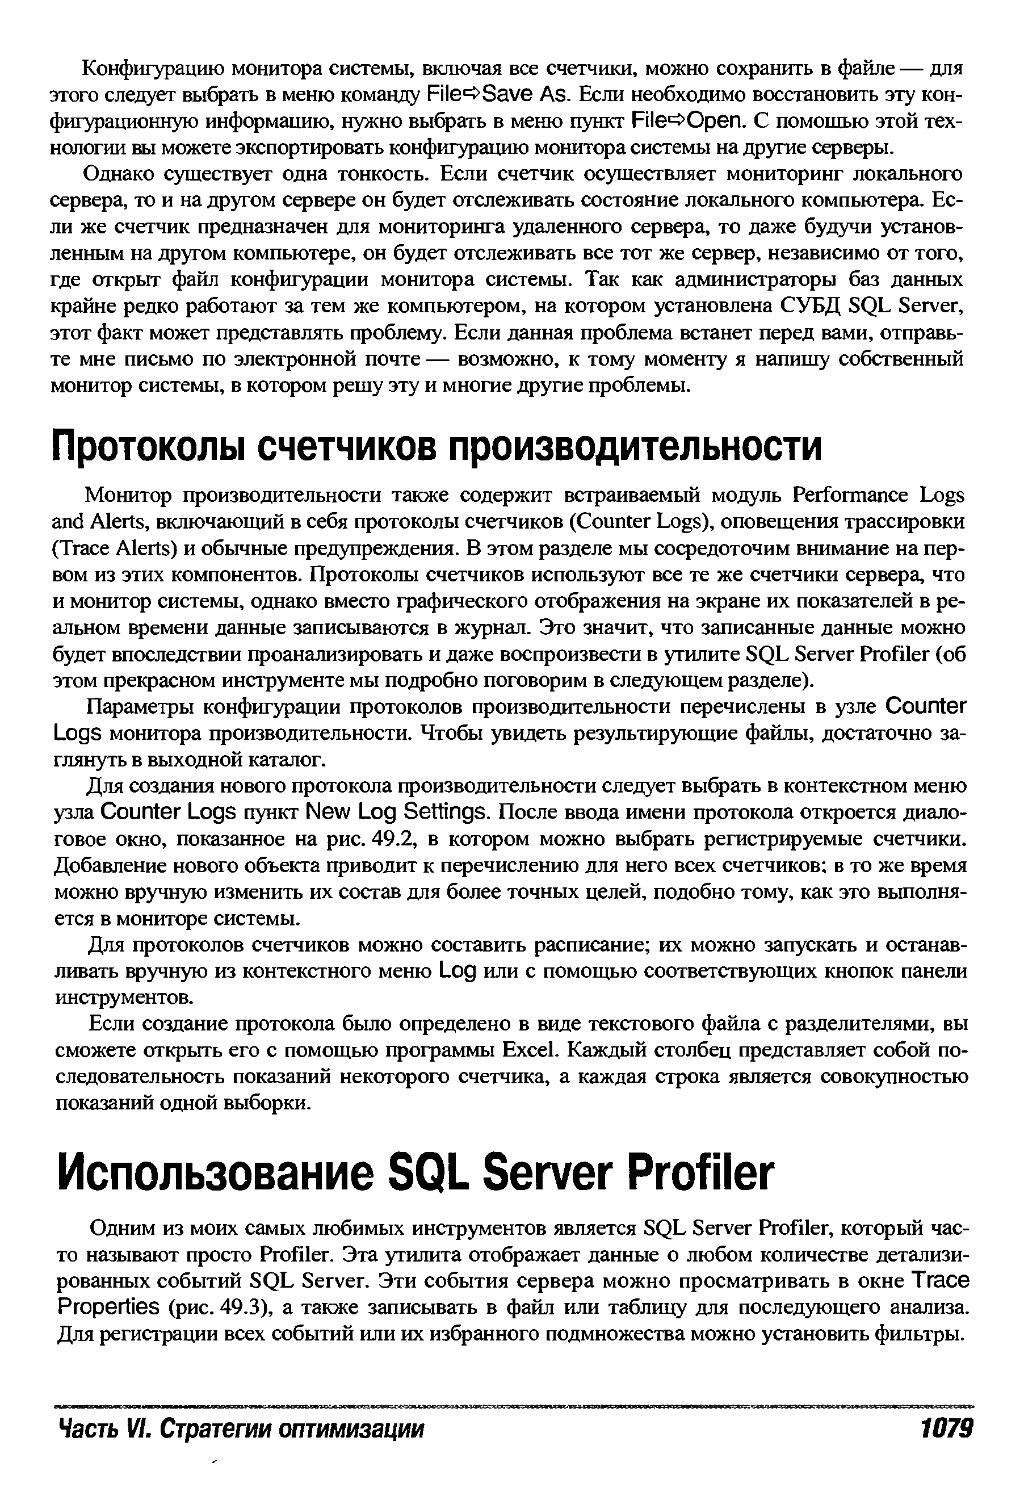 Использование SQL Server Profiler